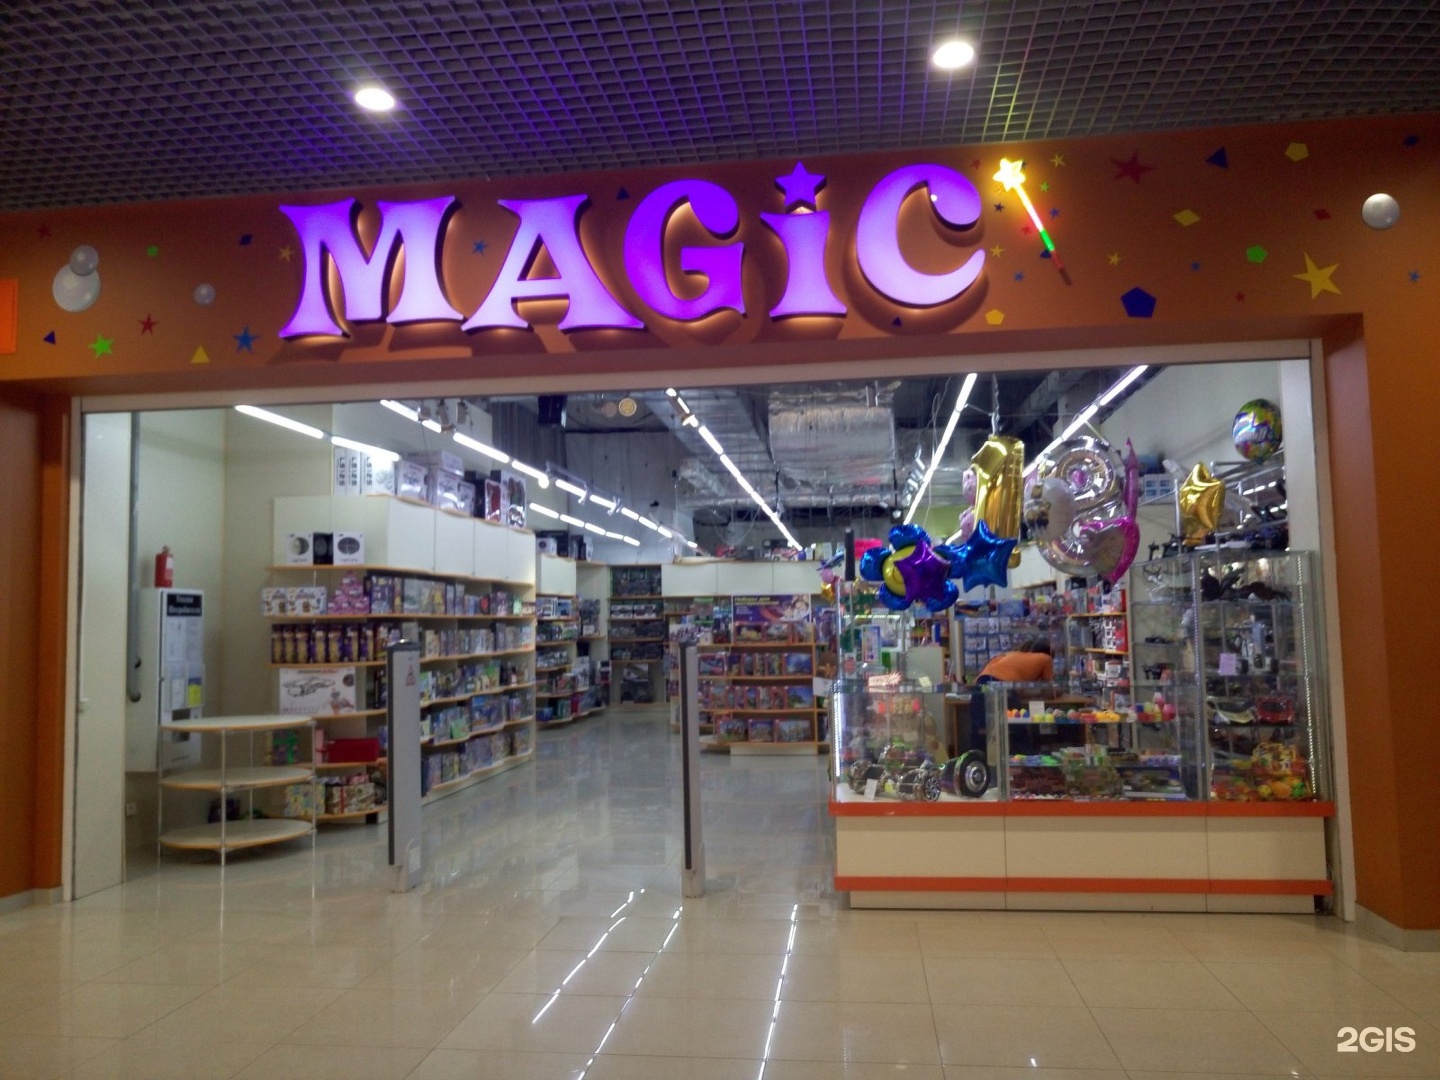 Где купить magic. Magic магазин. Волшебный магазин игрушек. Magic магазин игрушек. Мэджик магазин игрушек.